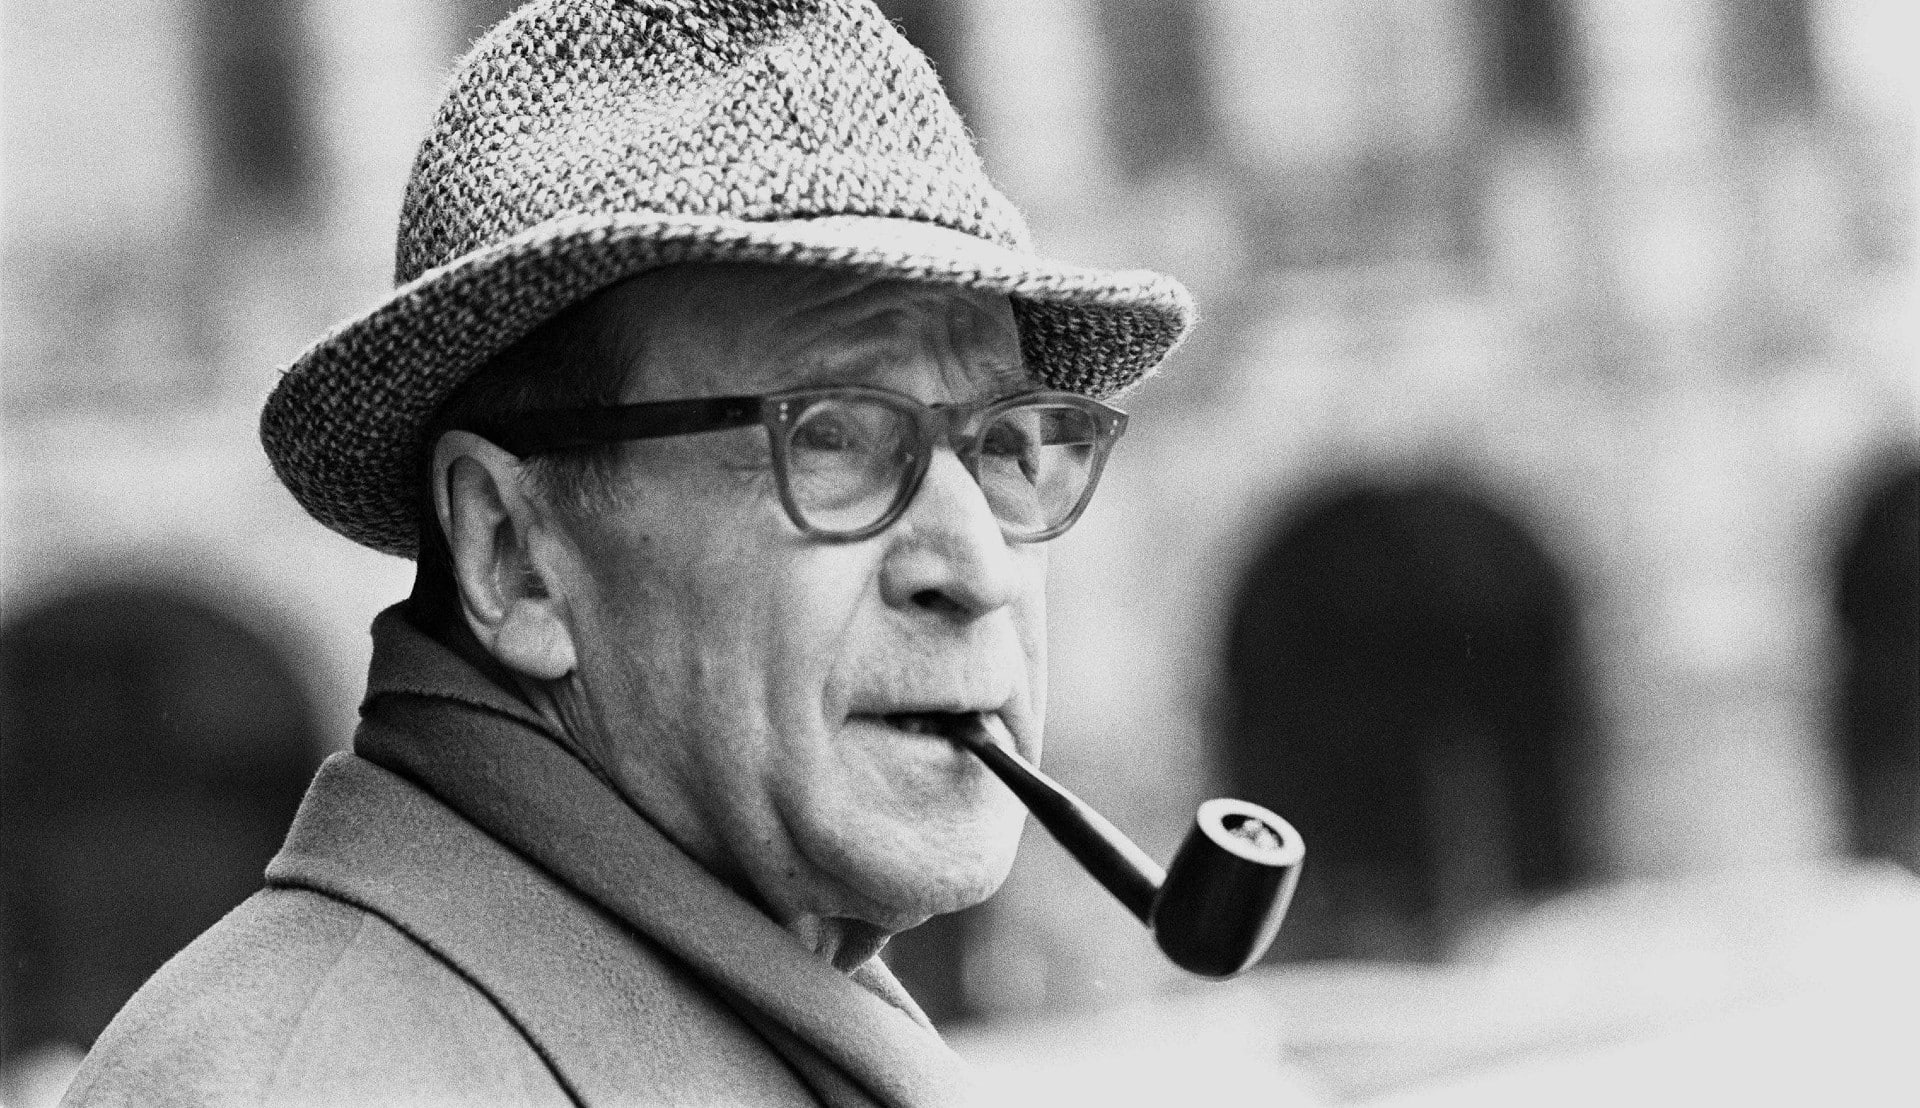 Le jour où Simenon a cessé d’écrire